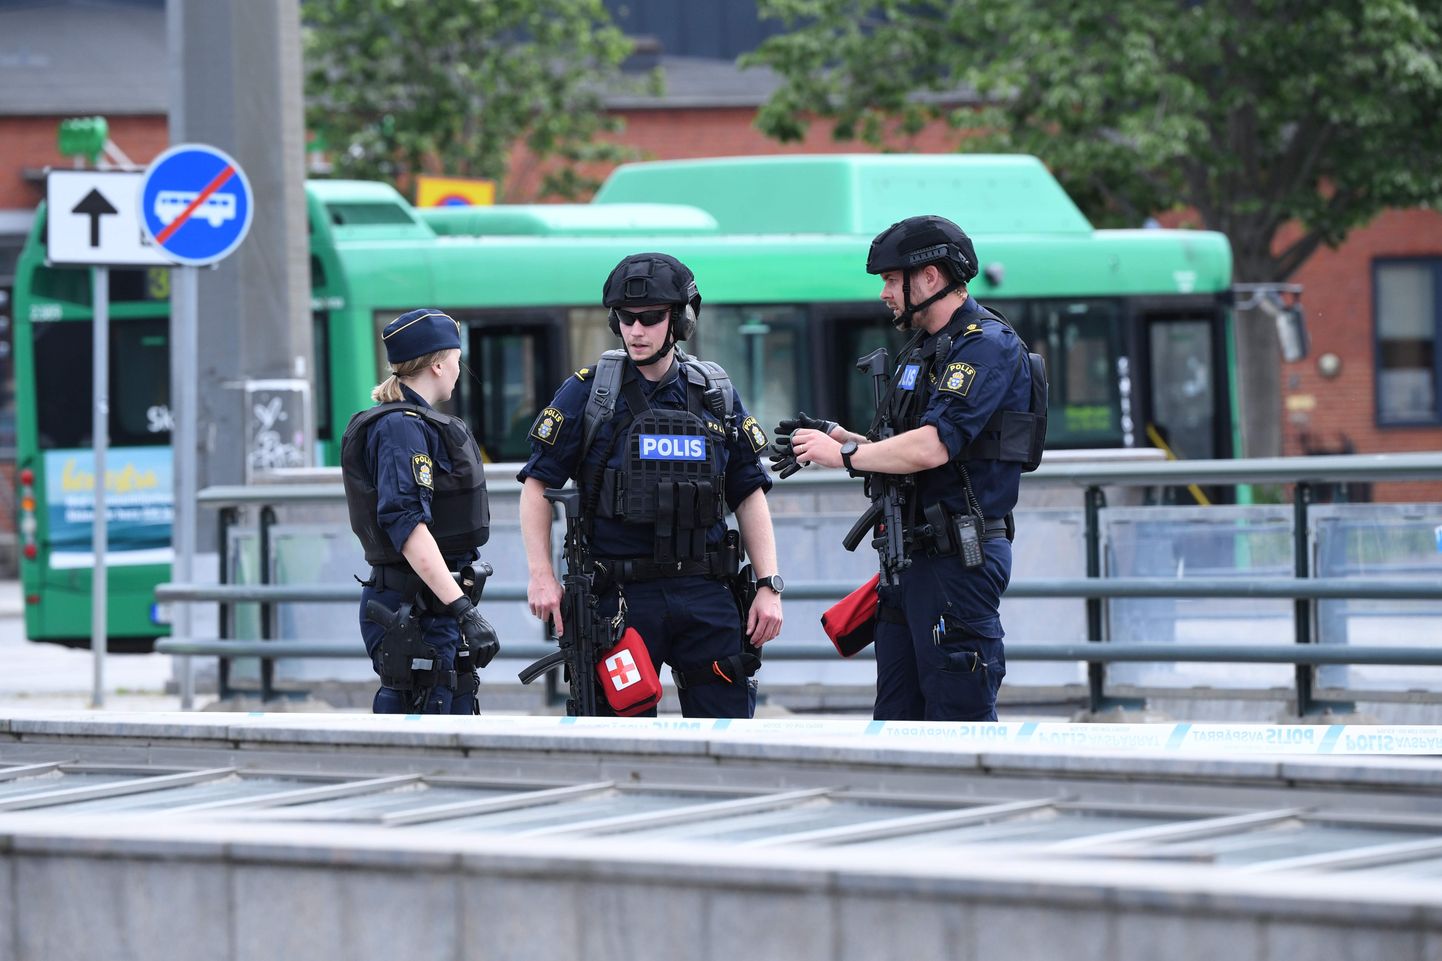 Rootsi politseinikud. Foto on illustratiivne.